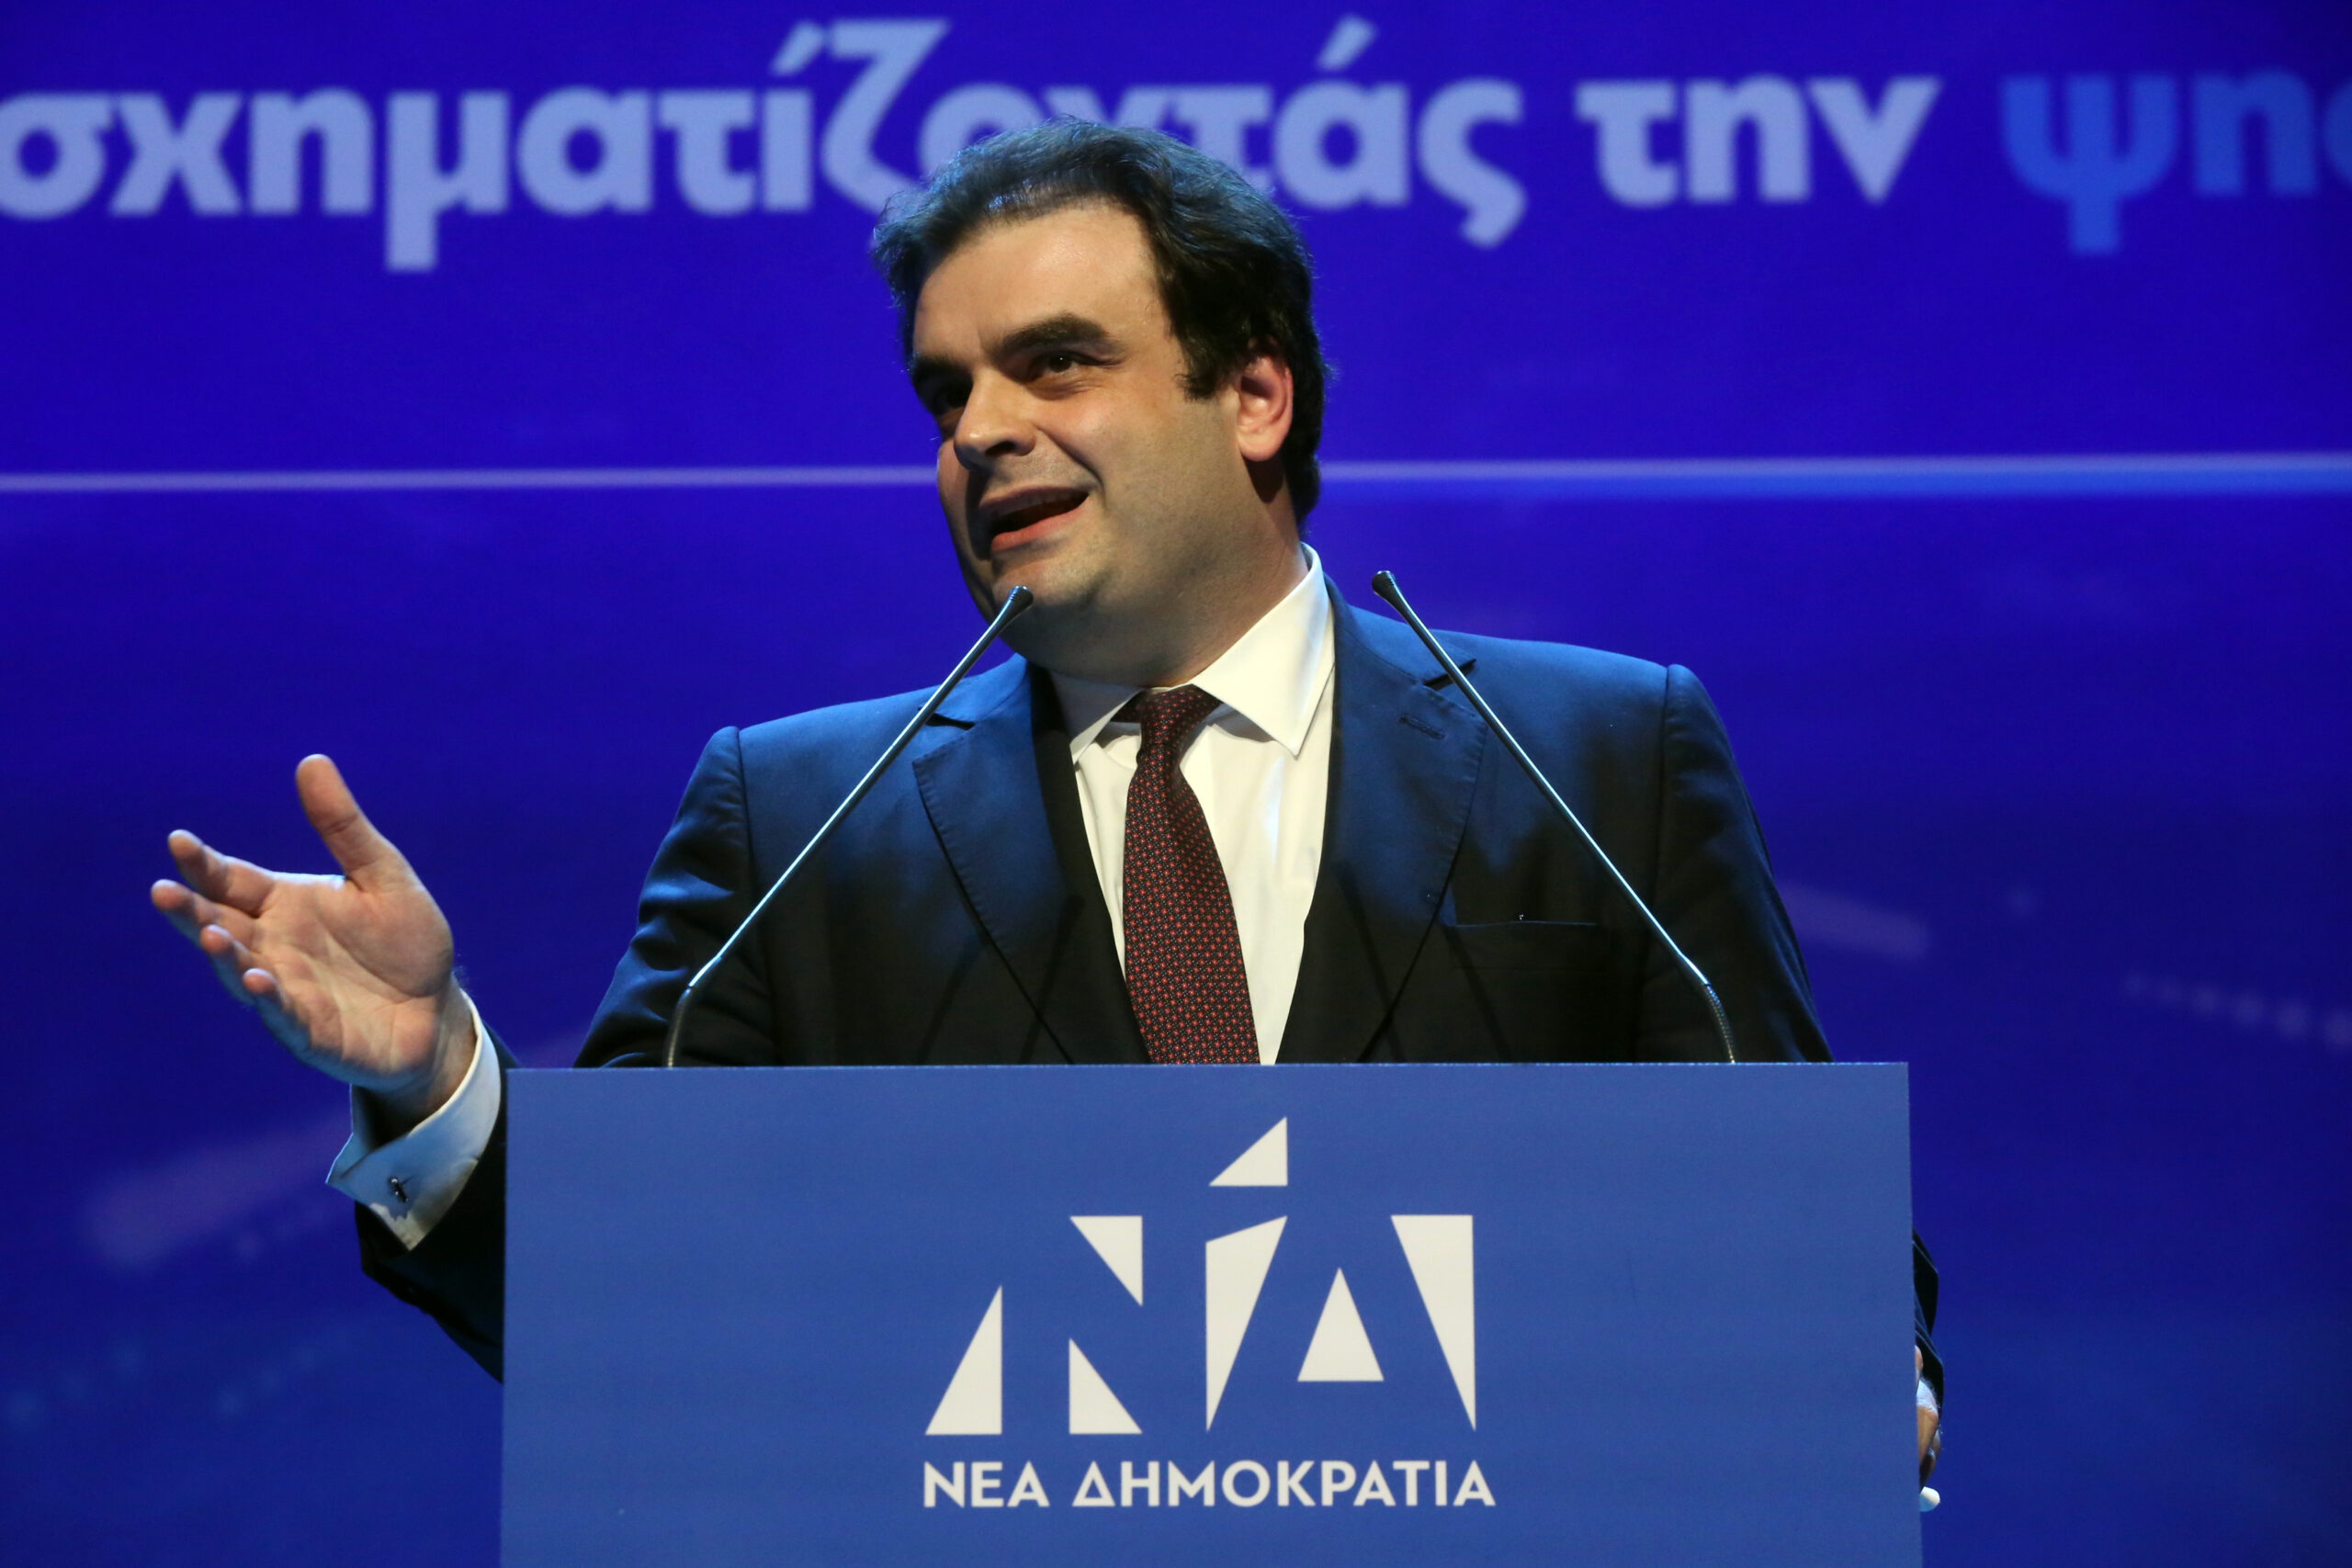 Κυρ. Πιερρακάκης: Να αποφασίσουμε αν θα συνομιλήσουμε με το χθες ή το αύριο - Η κυβέρνηση του Κυρ. Μητσοτάκη είναι το αύριο.